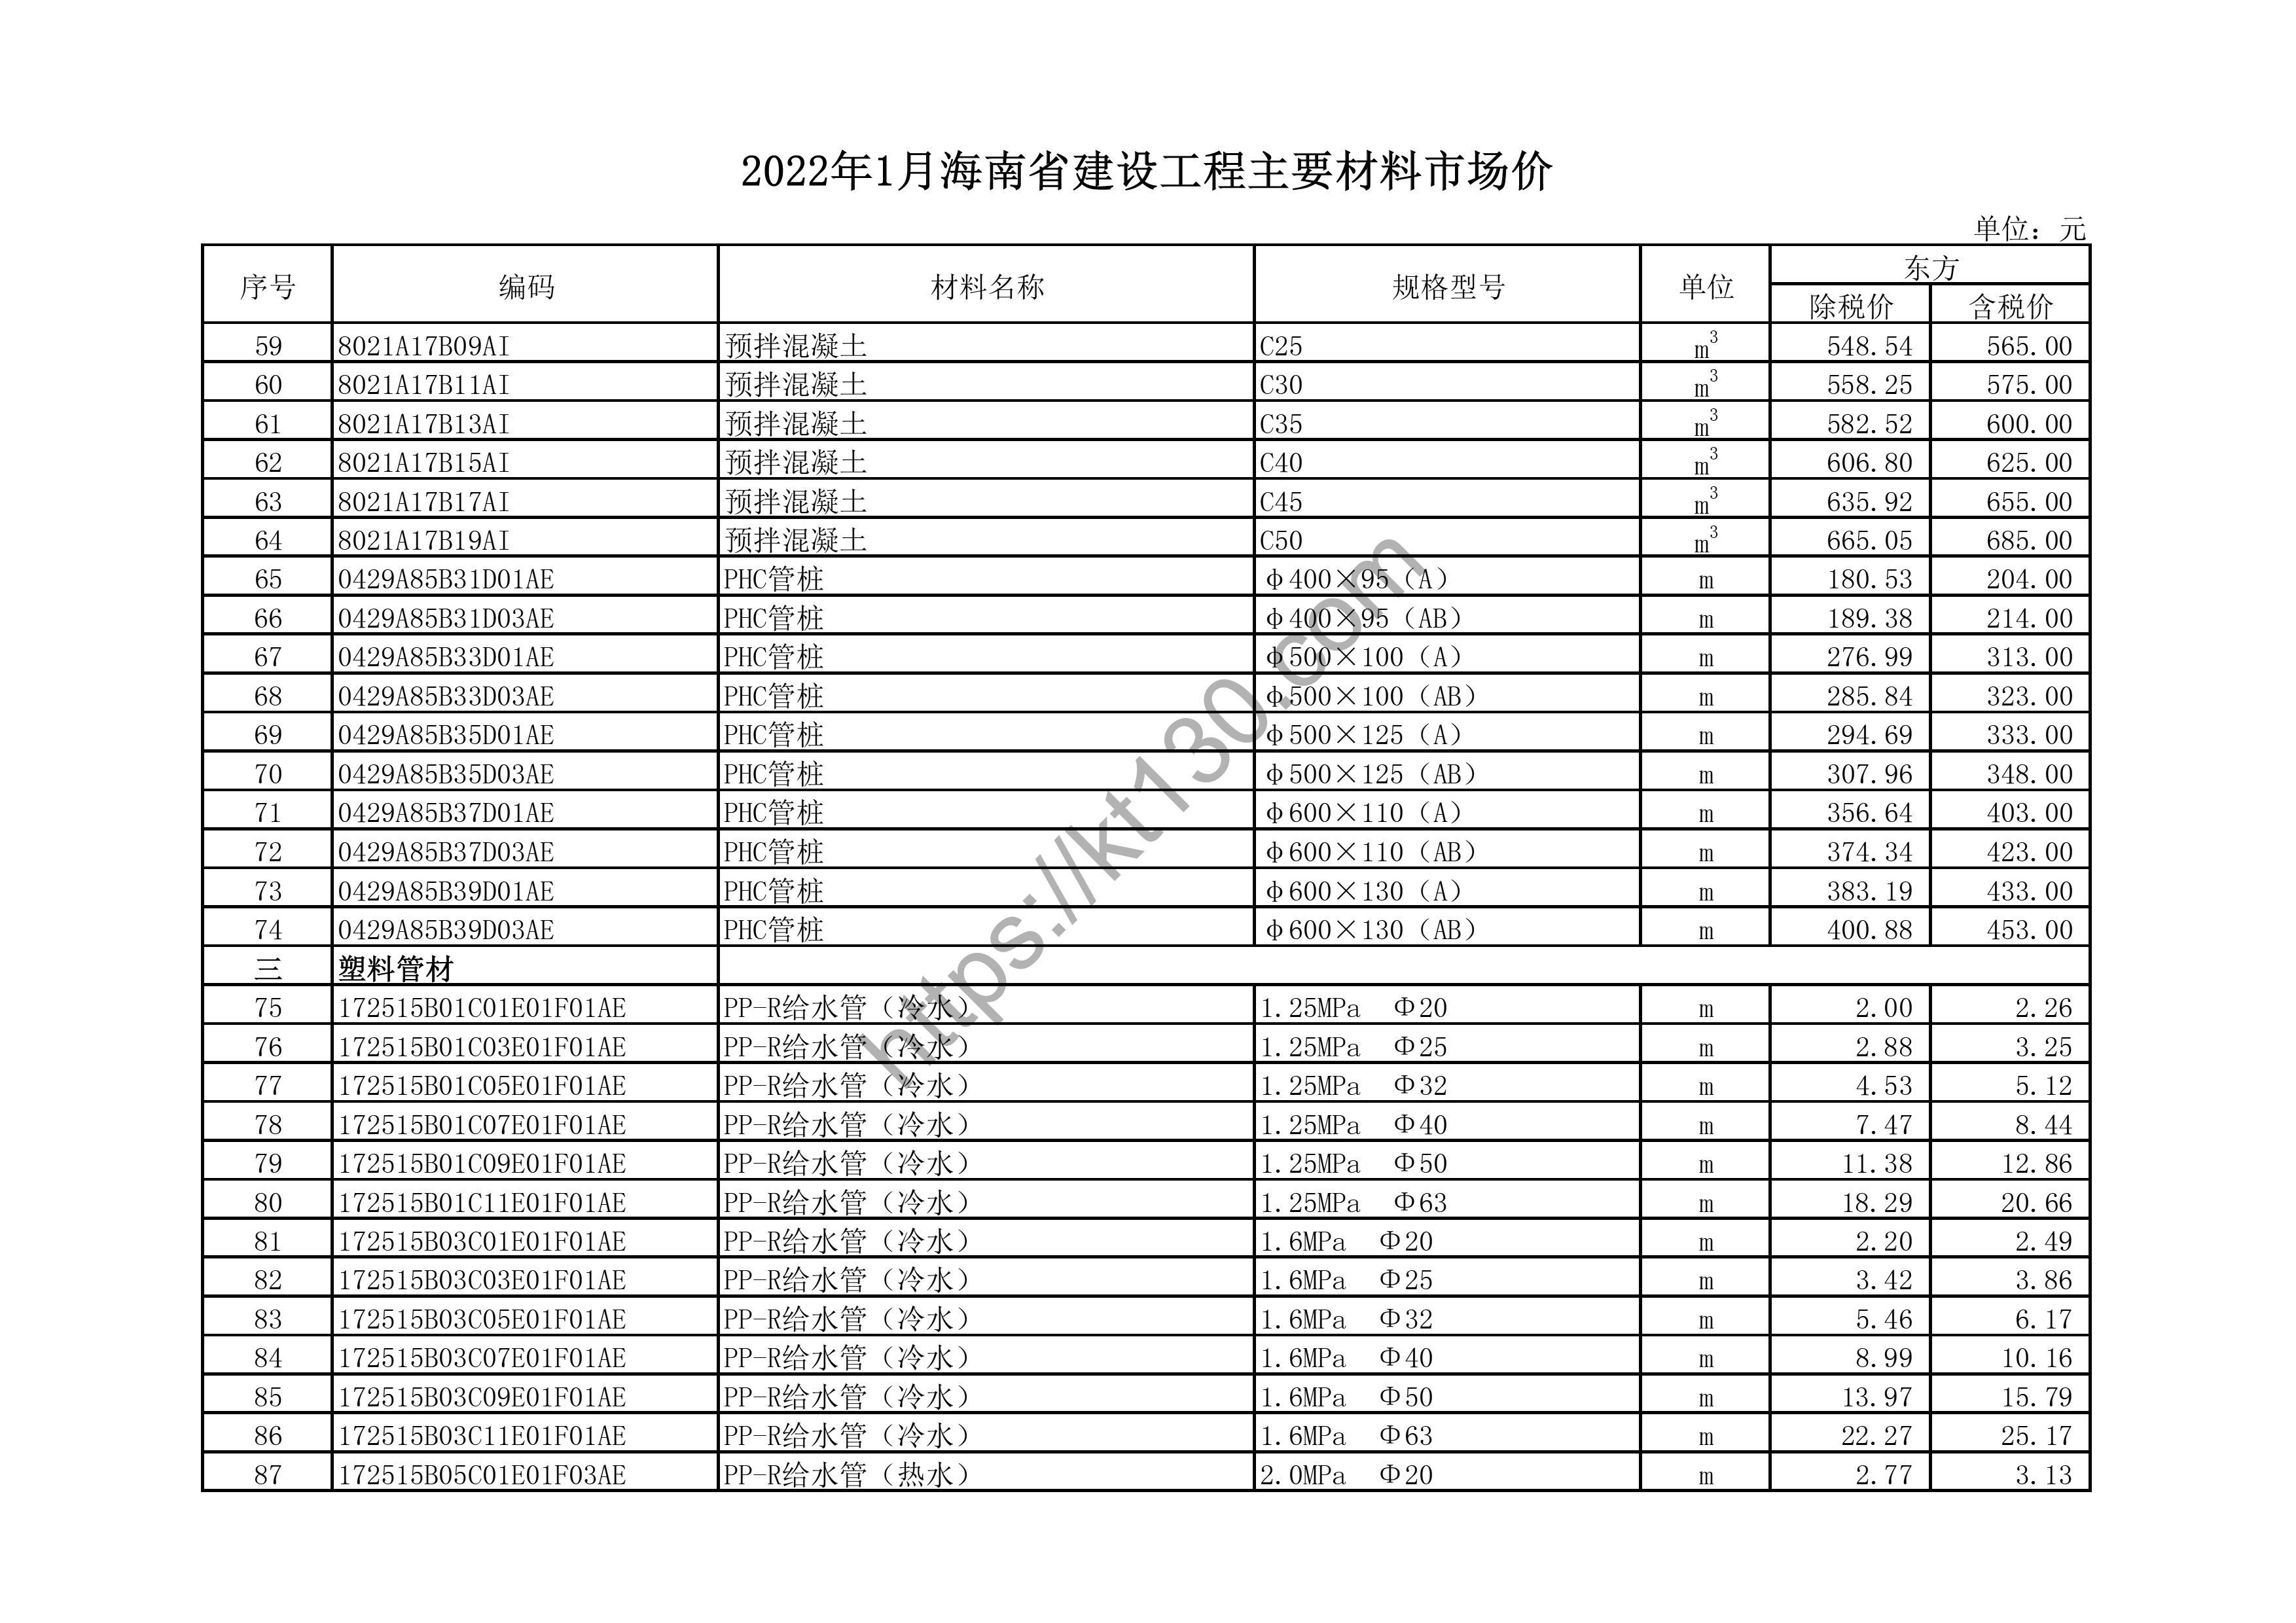 海南省2022年1月建筑材料价_PPR给水管_43749